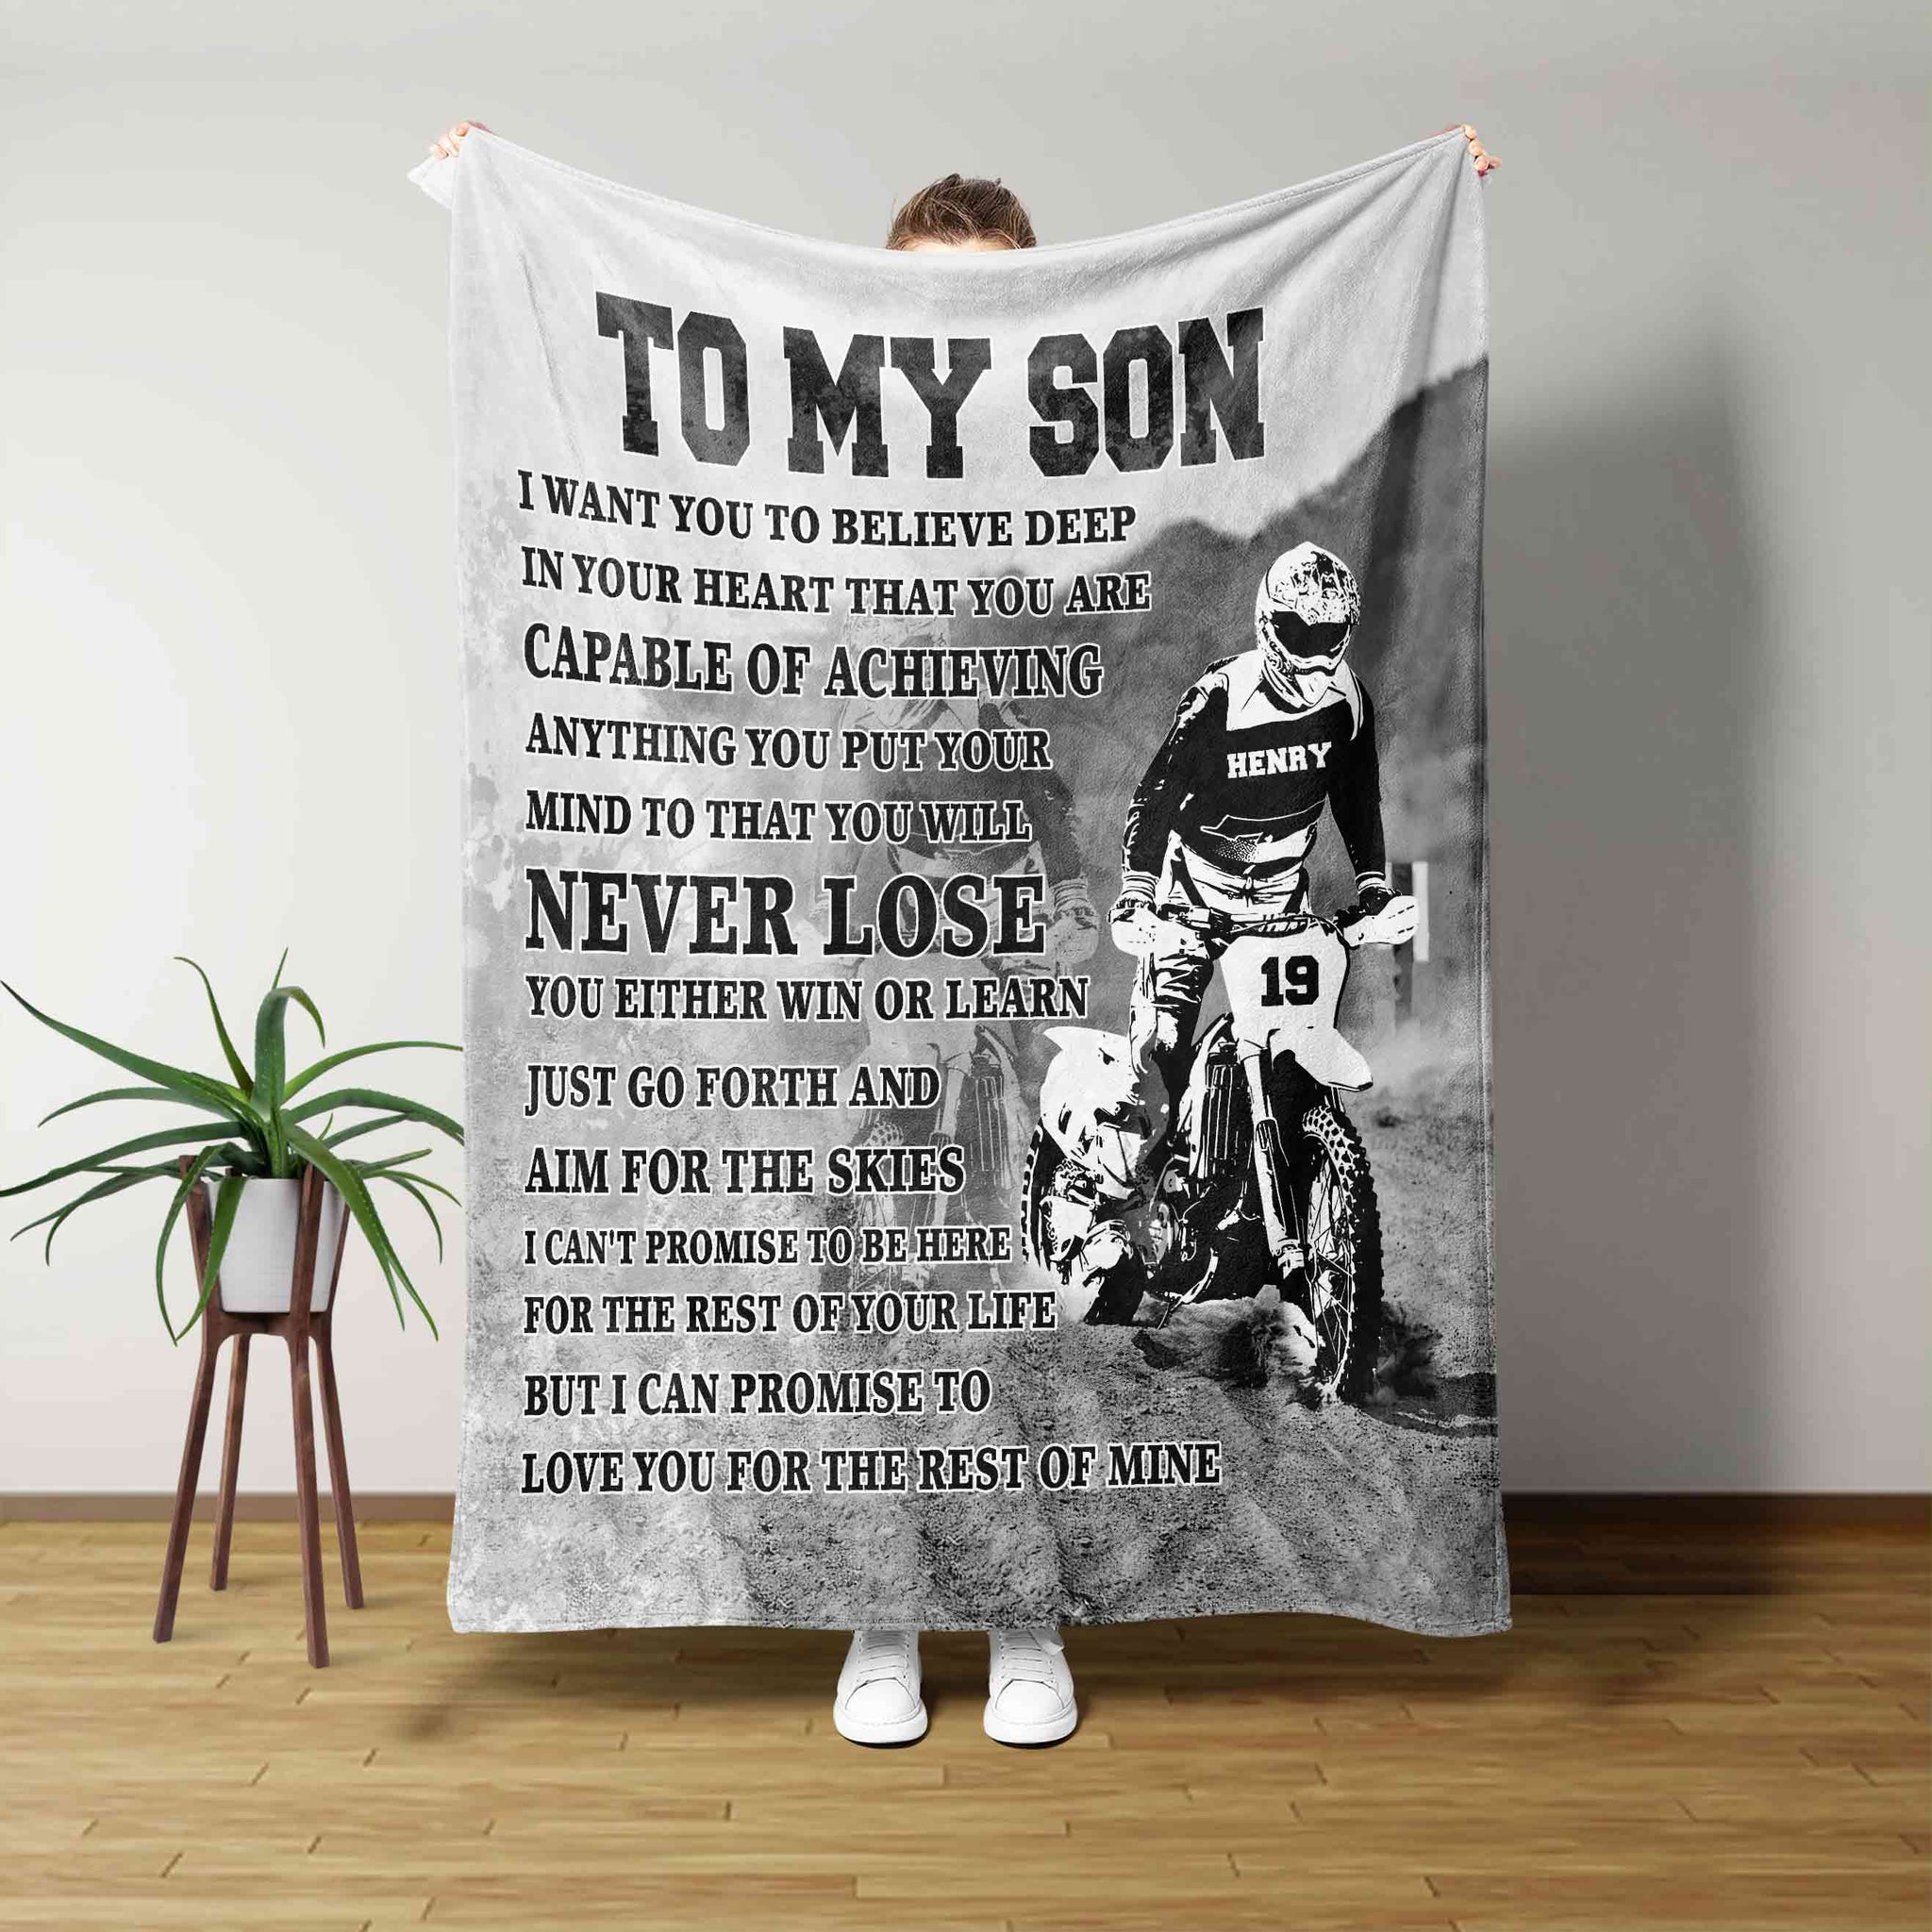 To My Son Blanket, Motorbike Blanket, Dirt Bike Blanket, Racing Blanket, Family Blanket, Custom Name Blanket